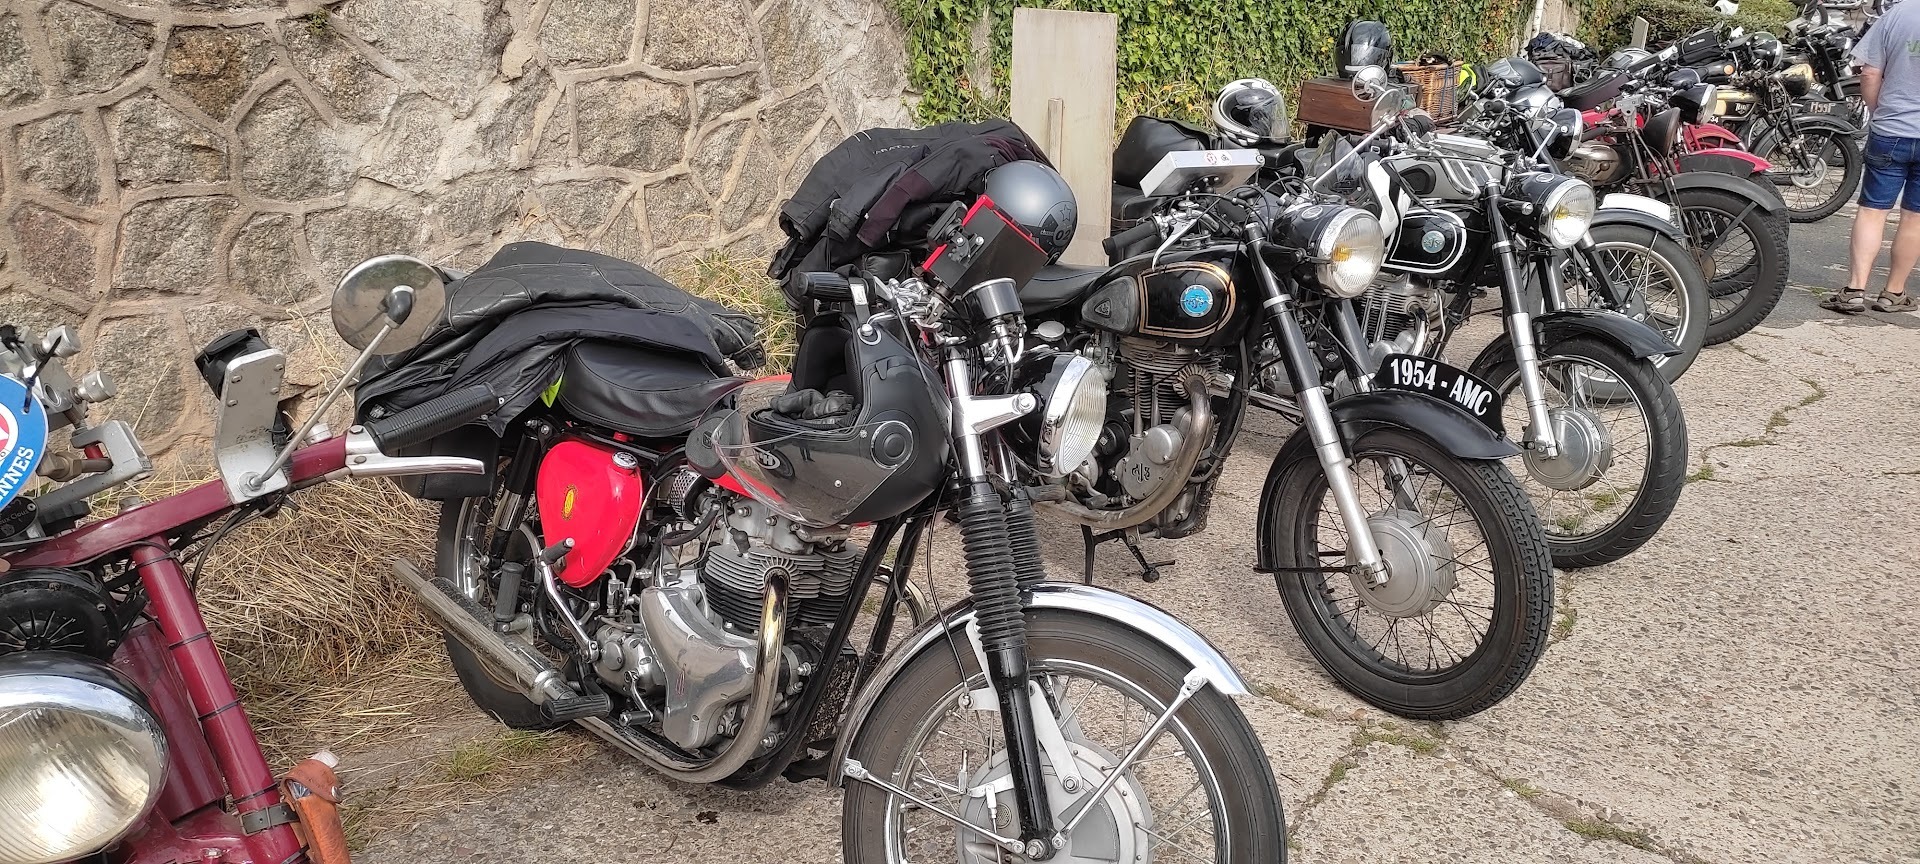 tour de france motos anciennes  Kp9m